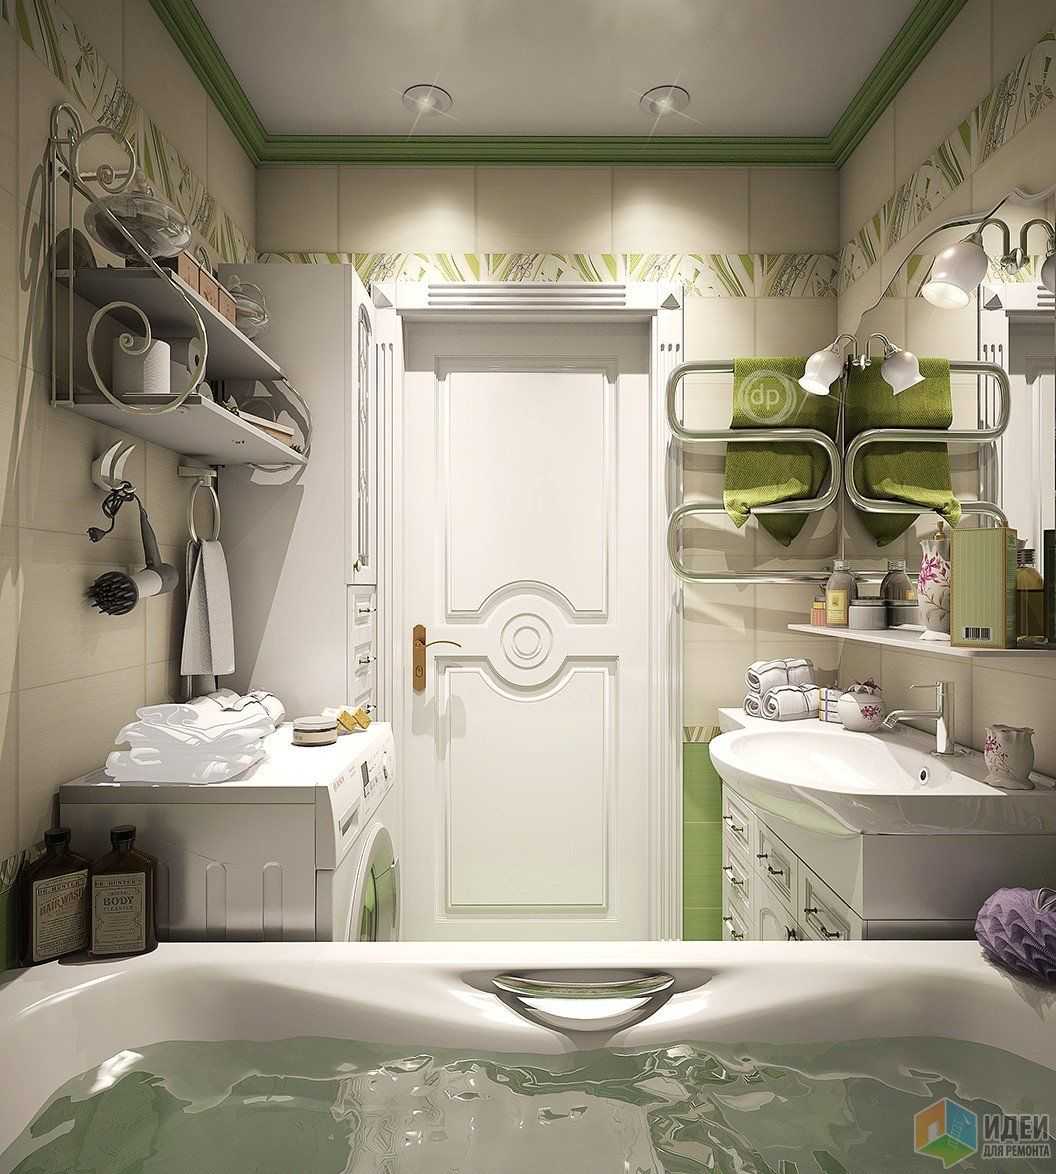 Применение керамогранита в стильном дизайне ванной